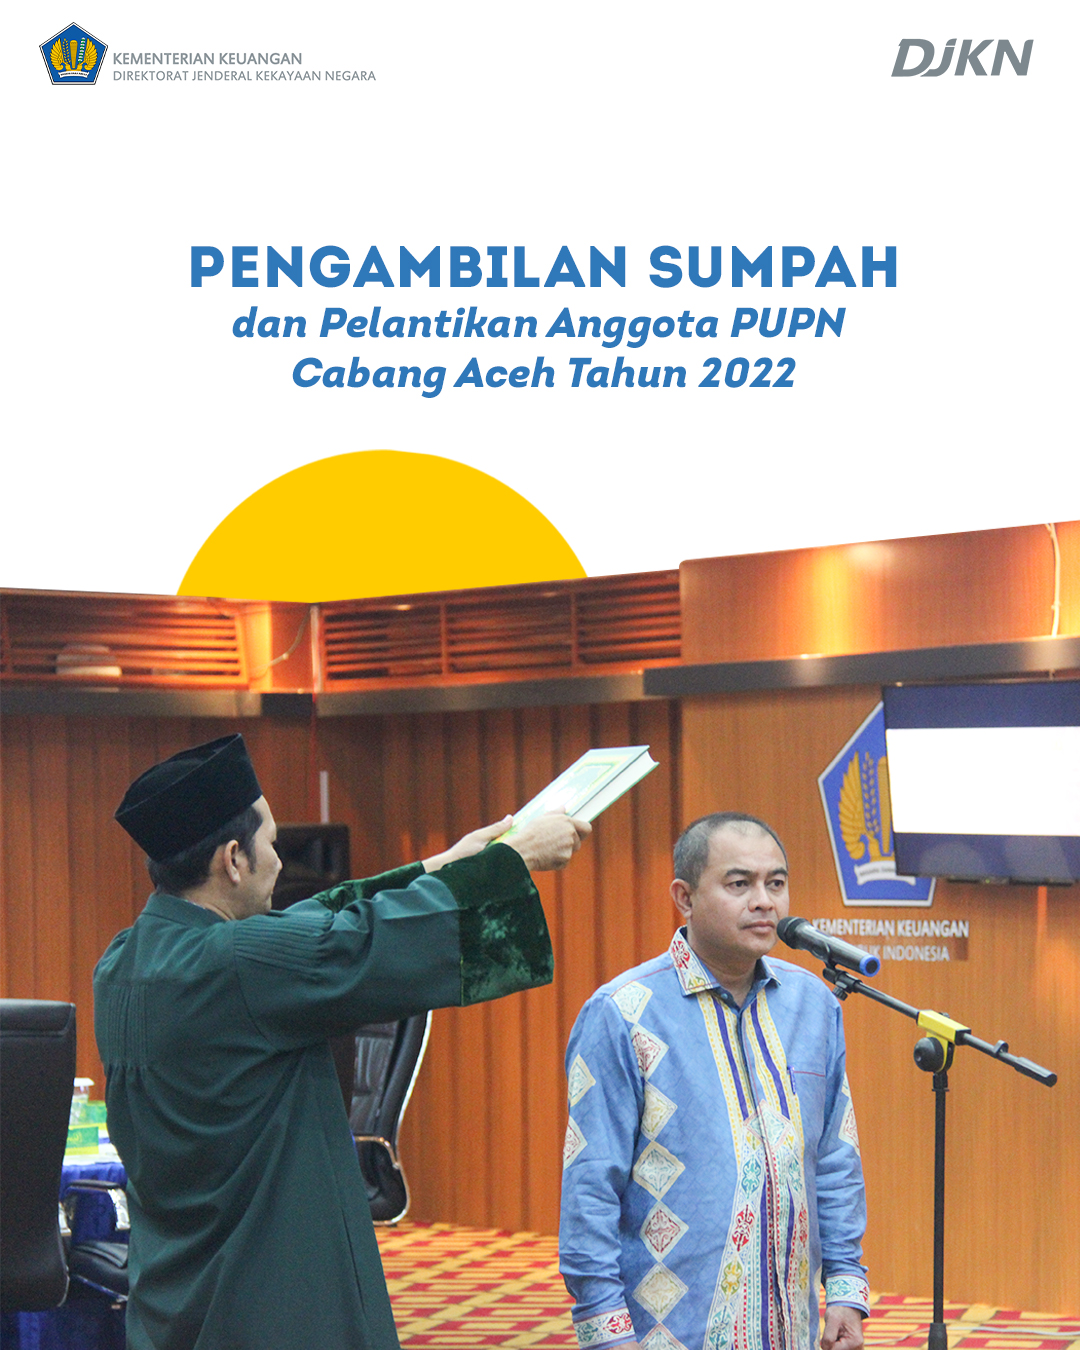 Pengambilan Sumpah dan Pelantikan Anggota PUPN Cabang Aceh Tahun 2022